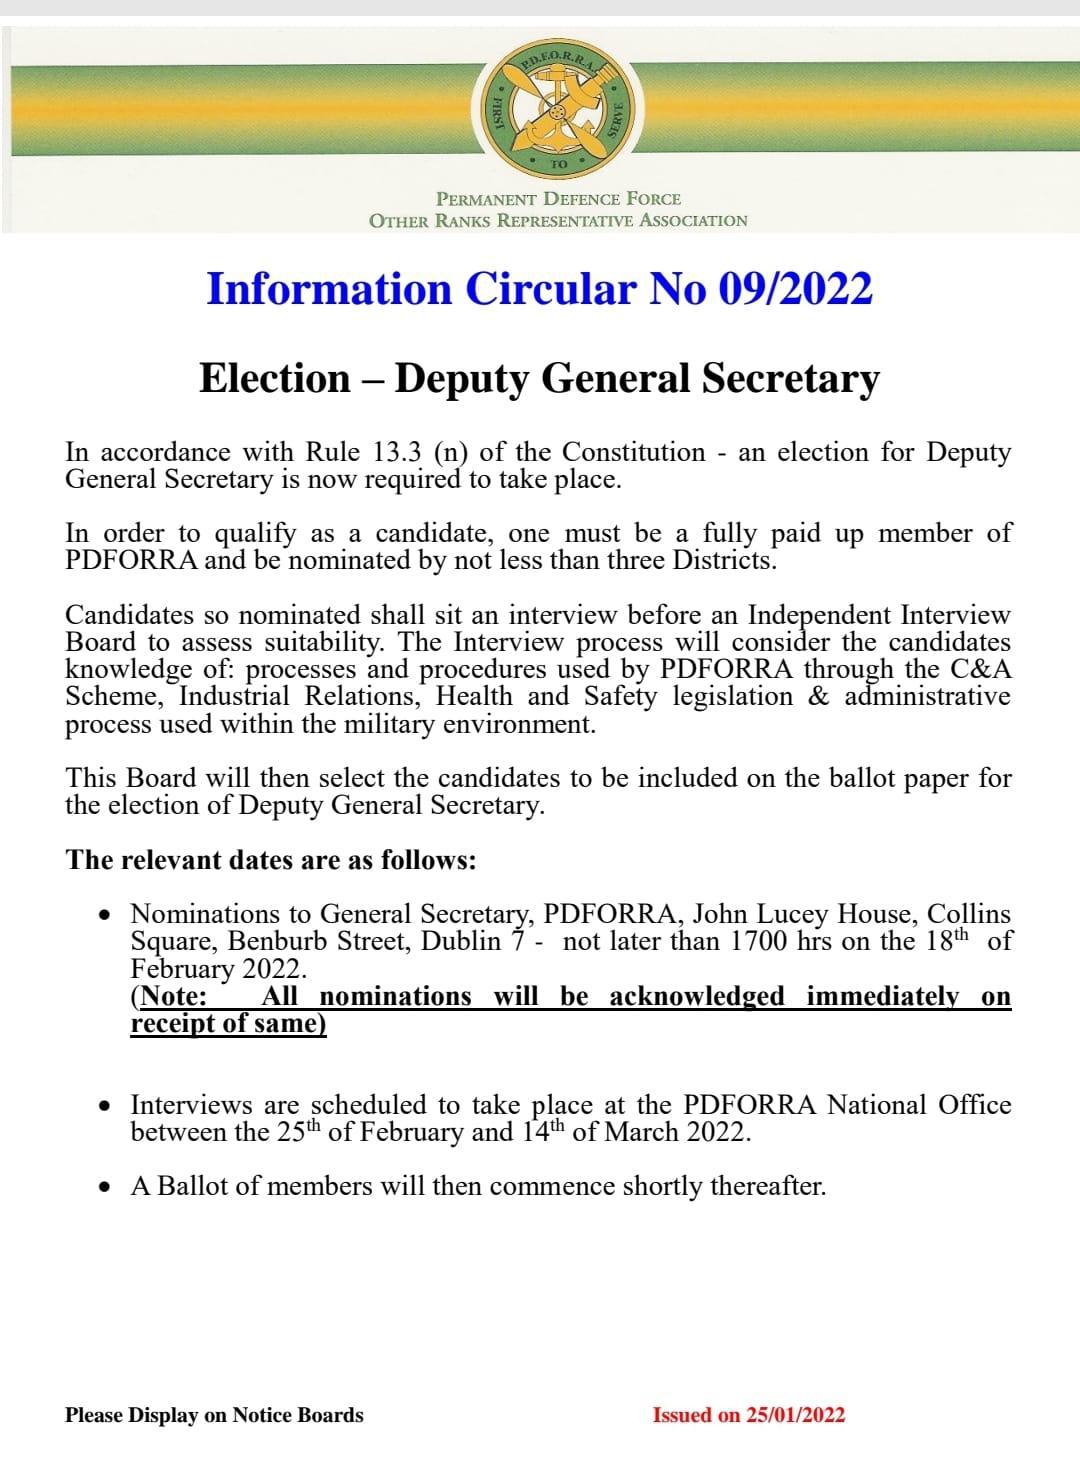 Information Circular No 09 of 22 - Election of Deputy General Secretary